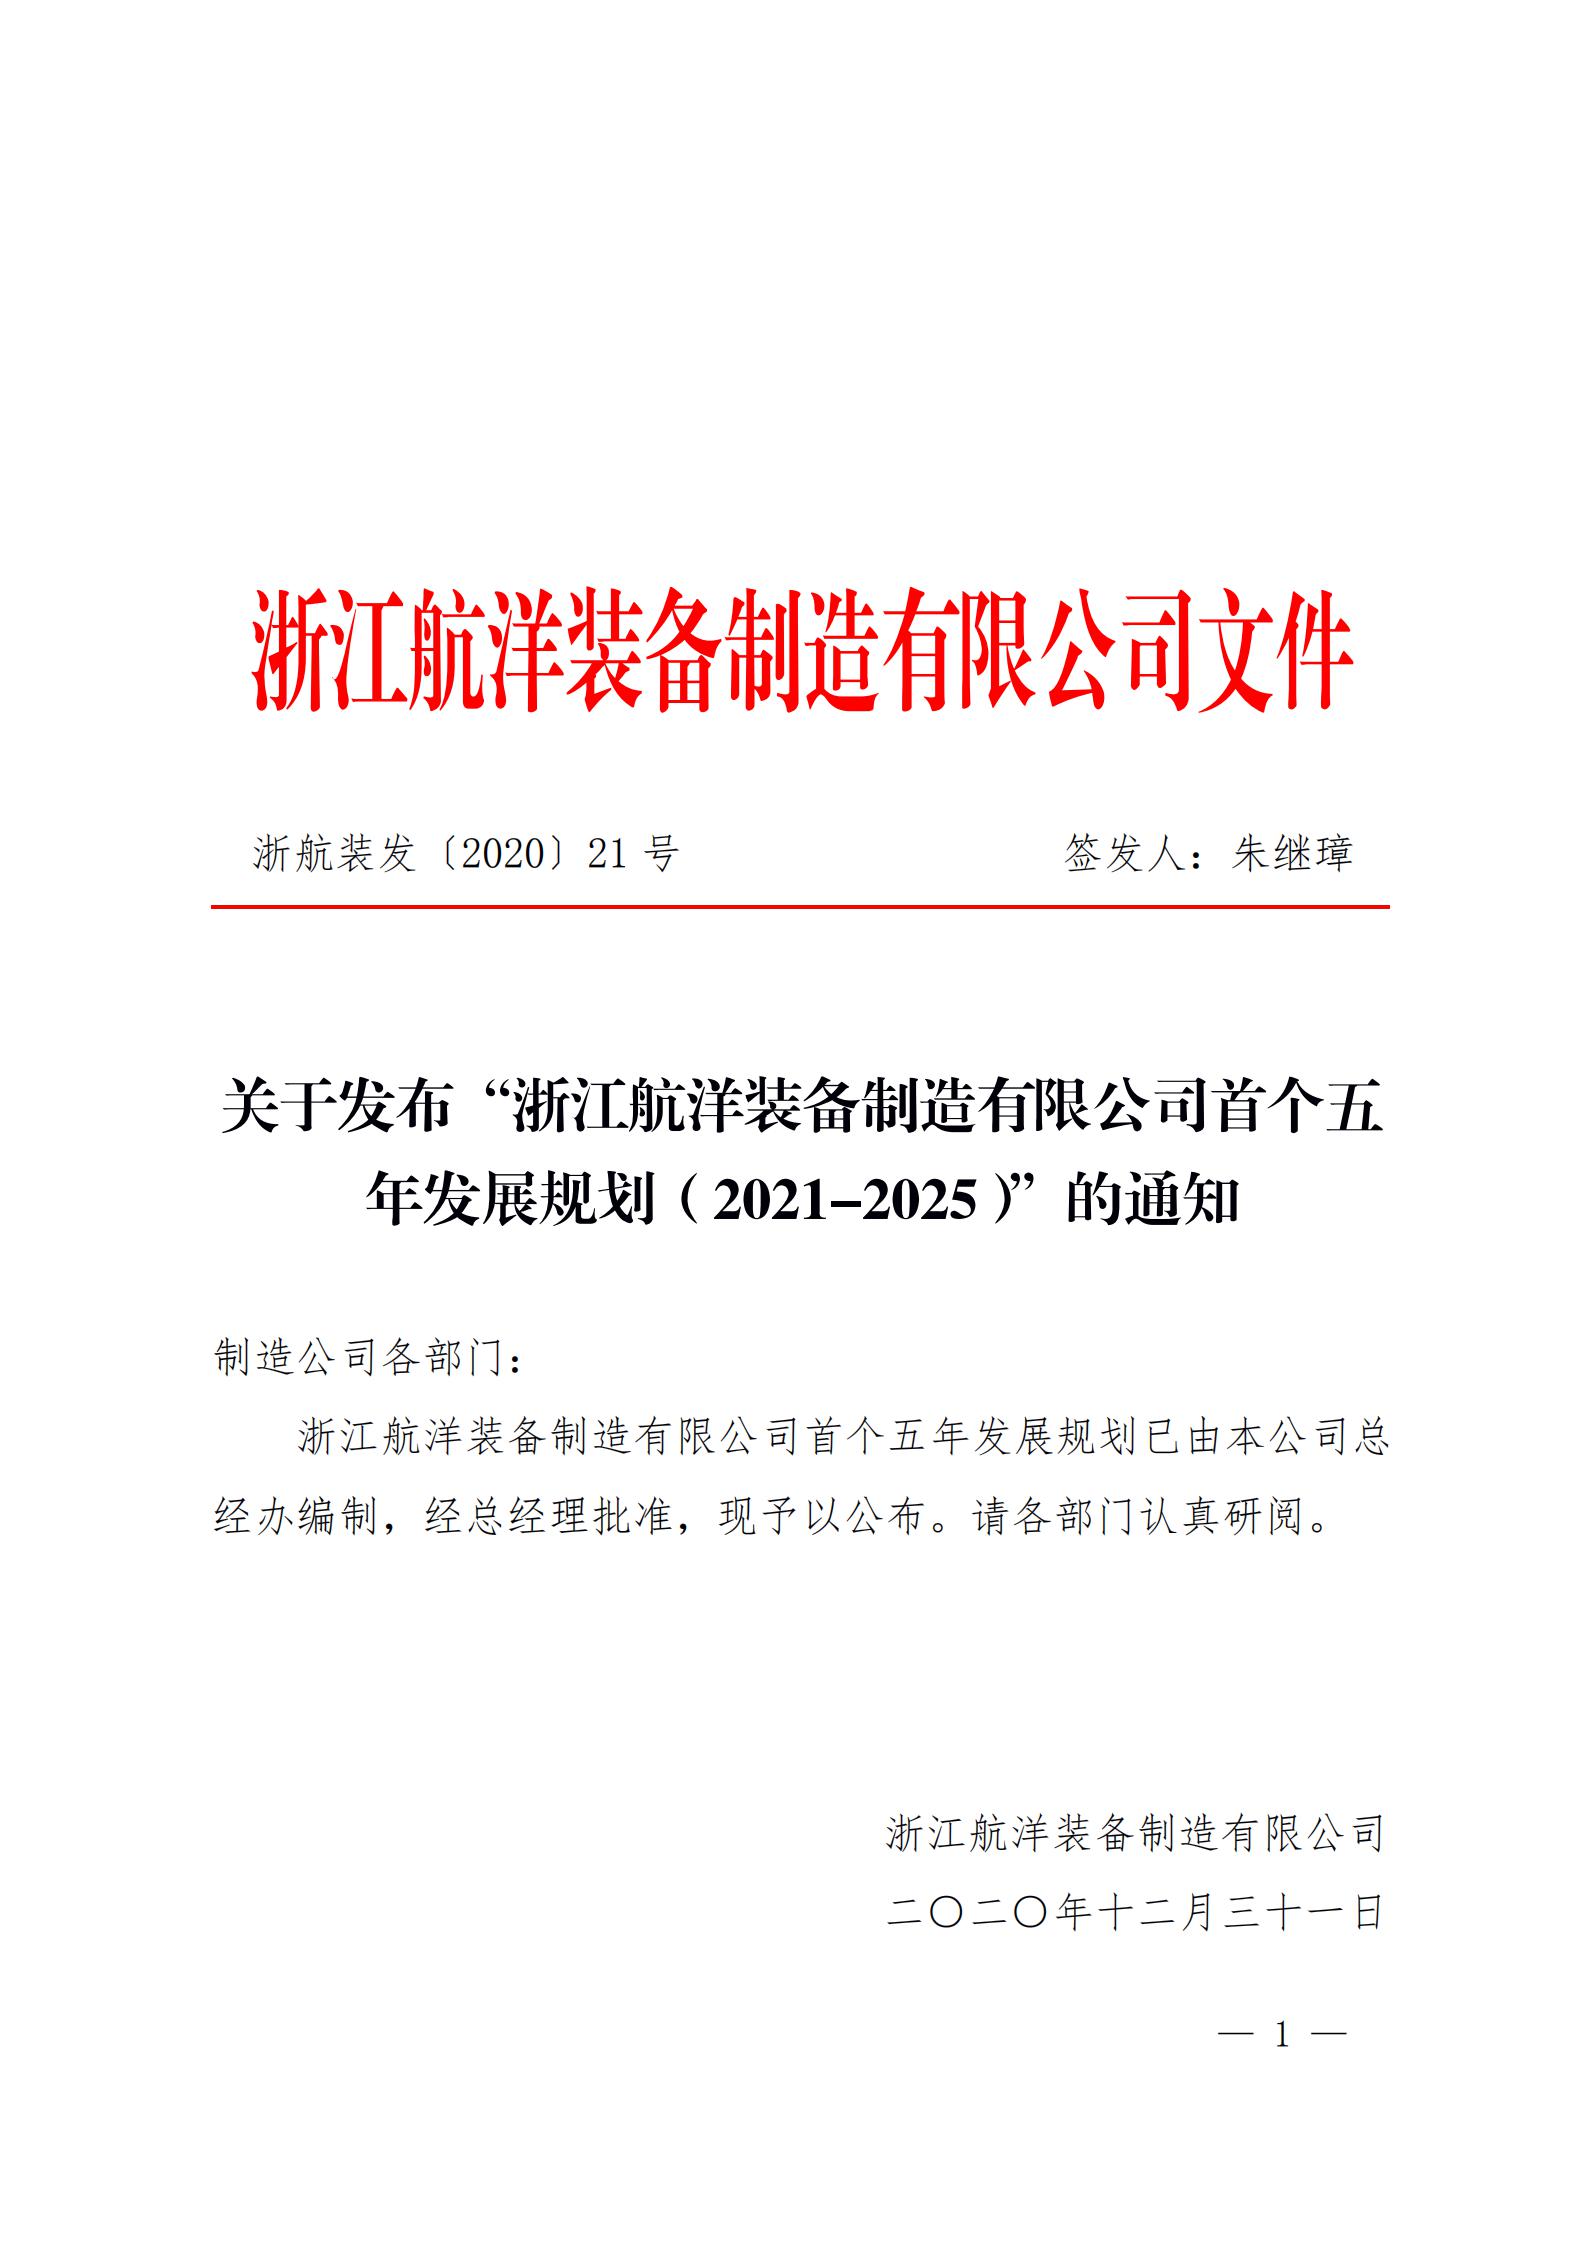 关于发布“浙江航洋装备制造有限公司首个五年发展规划（2021-2025）”的通知